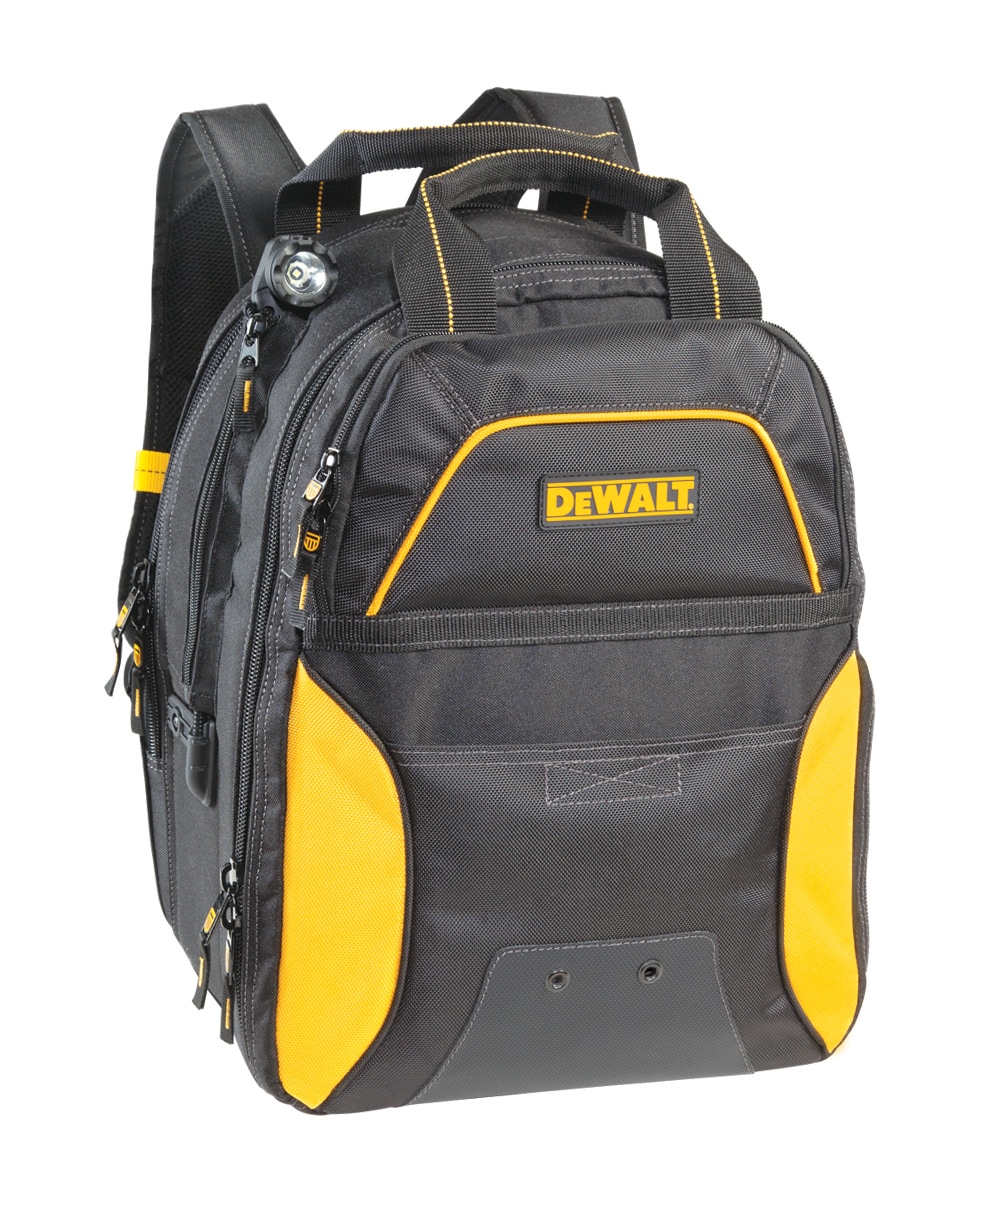 Original DeWalt DWST82927 Work Hand Tool Bag Backpack Rucksack Storage 76 Pocket 